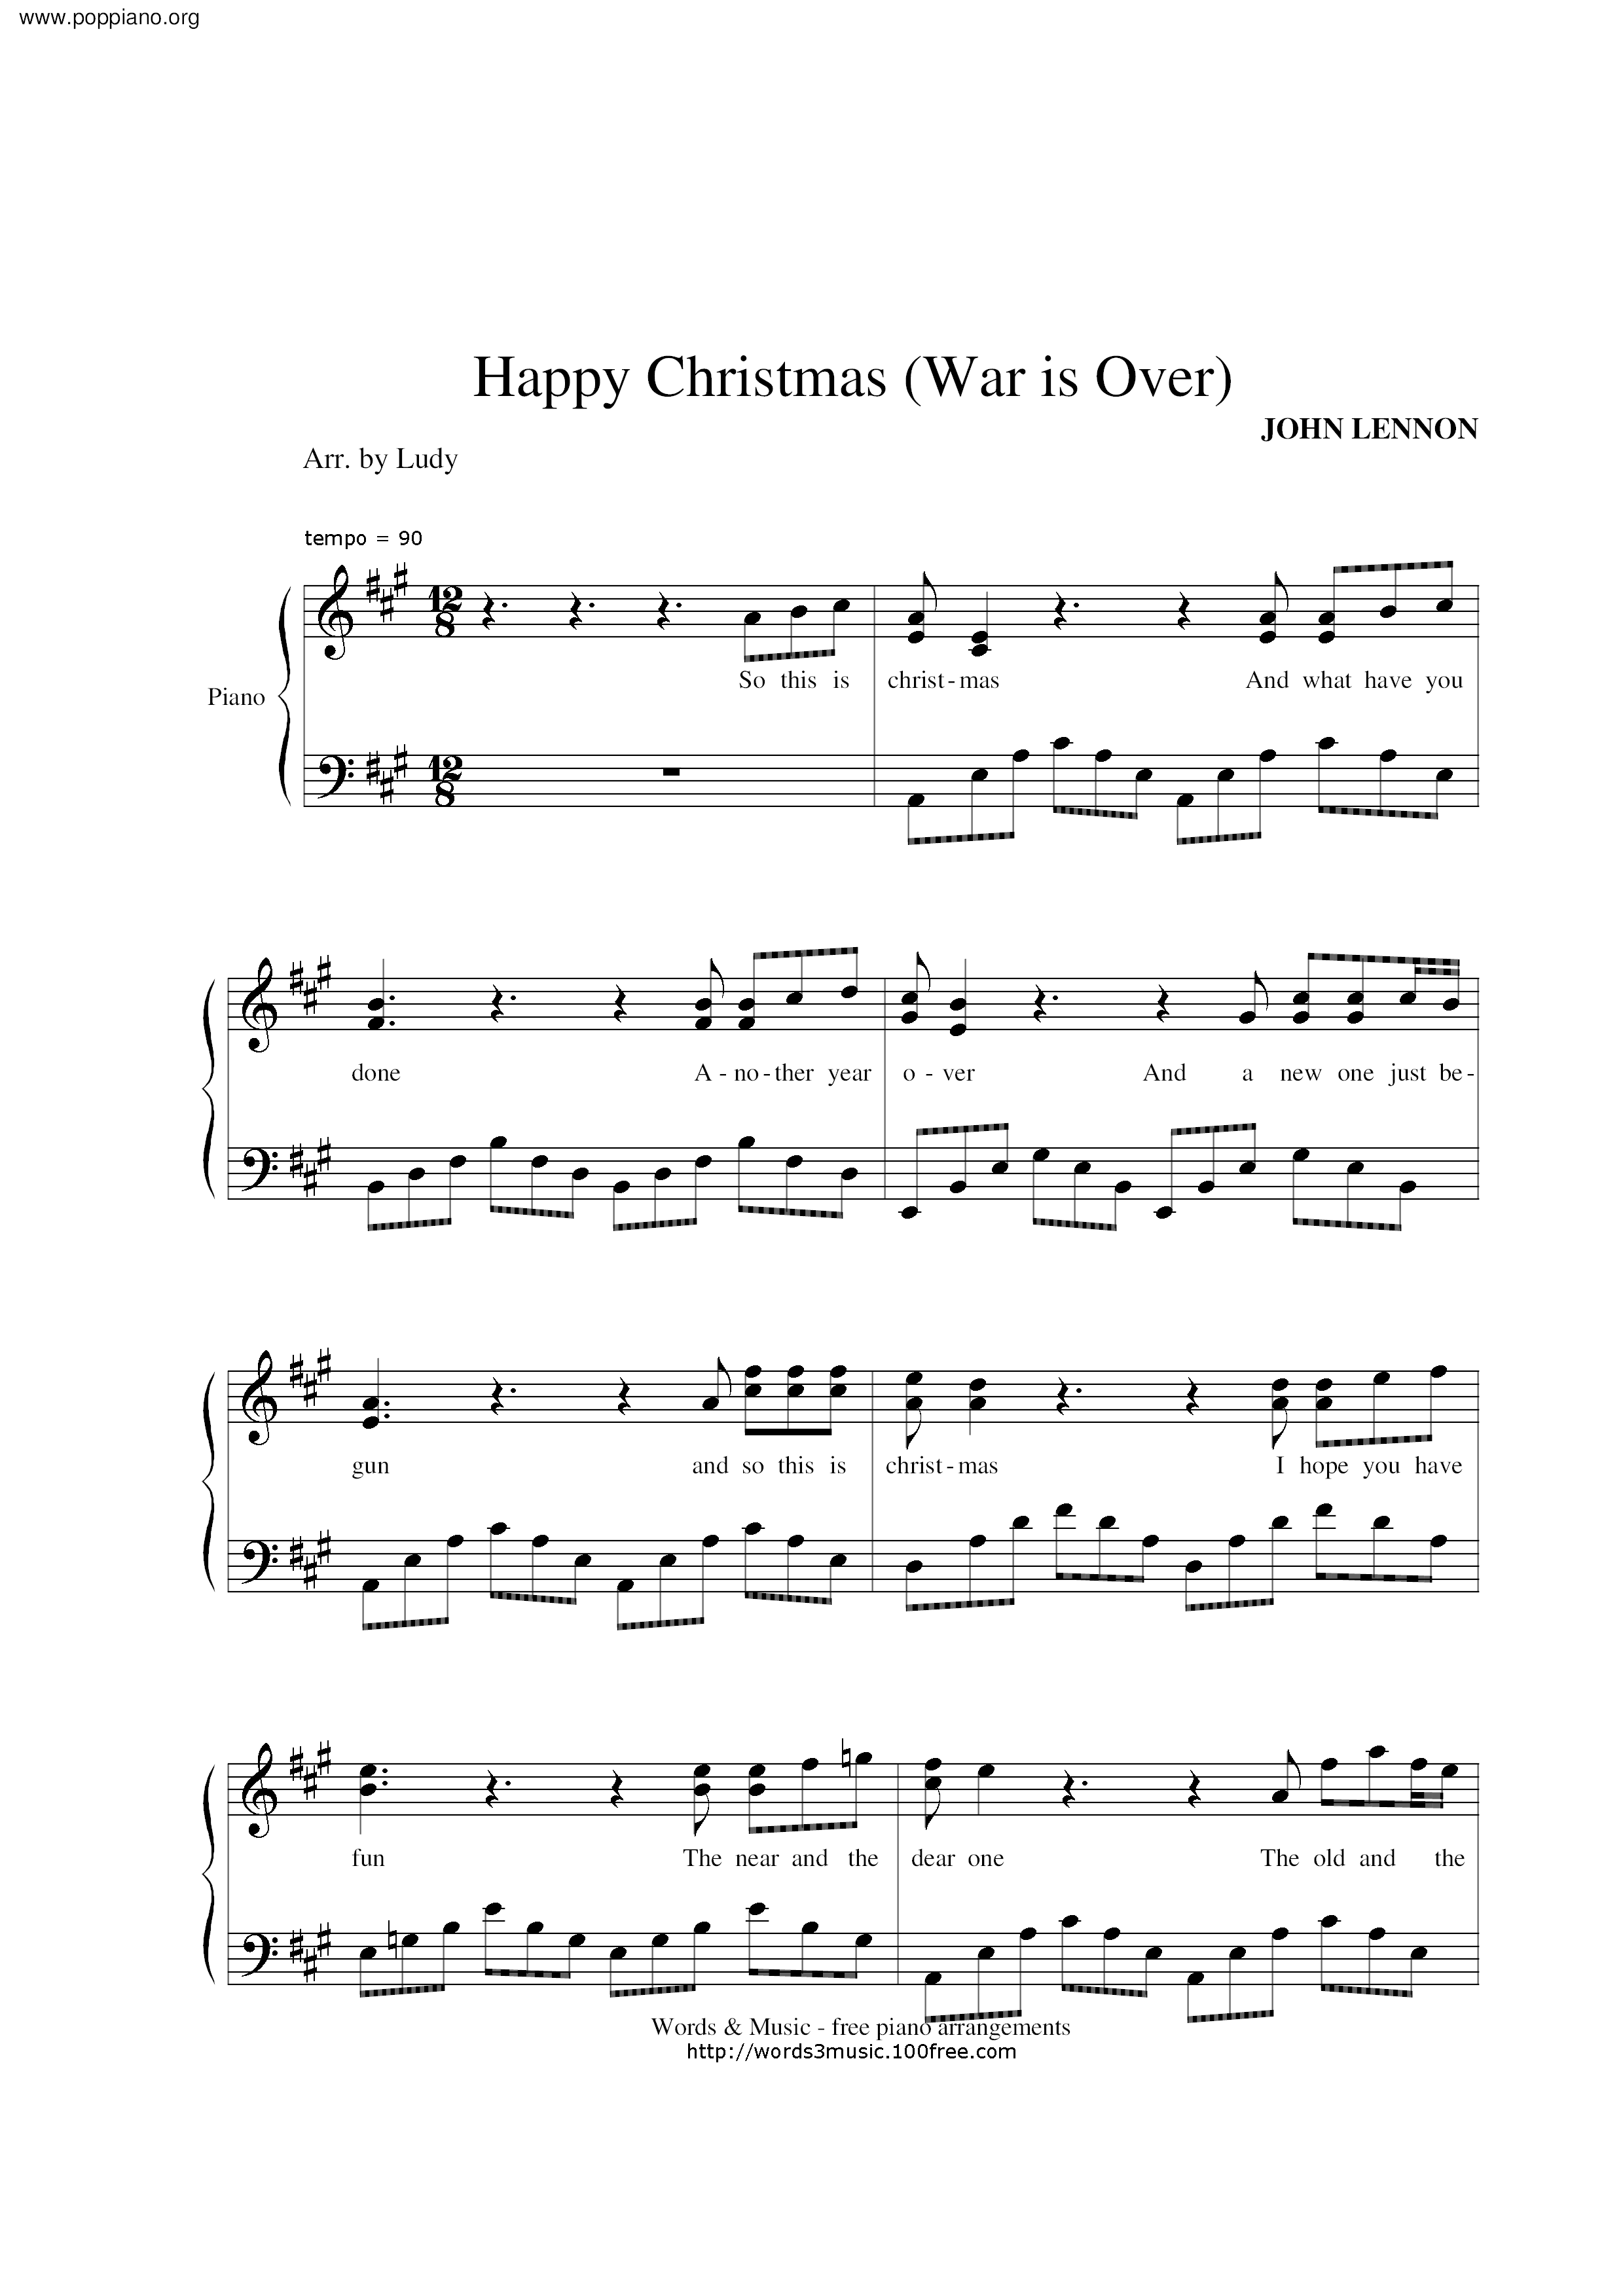 Happy Christmas Score